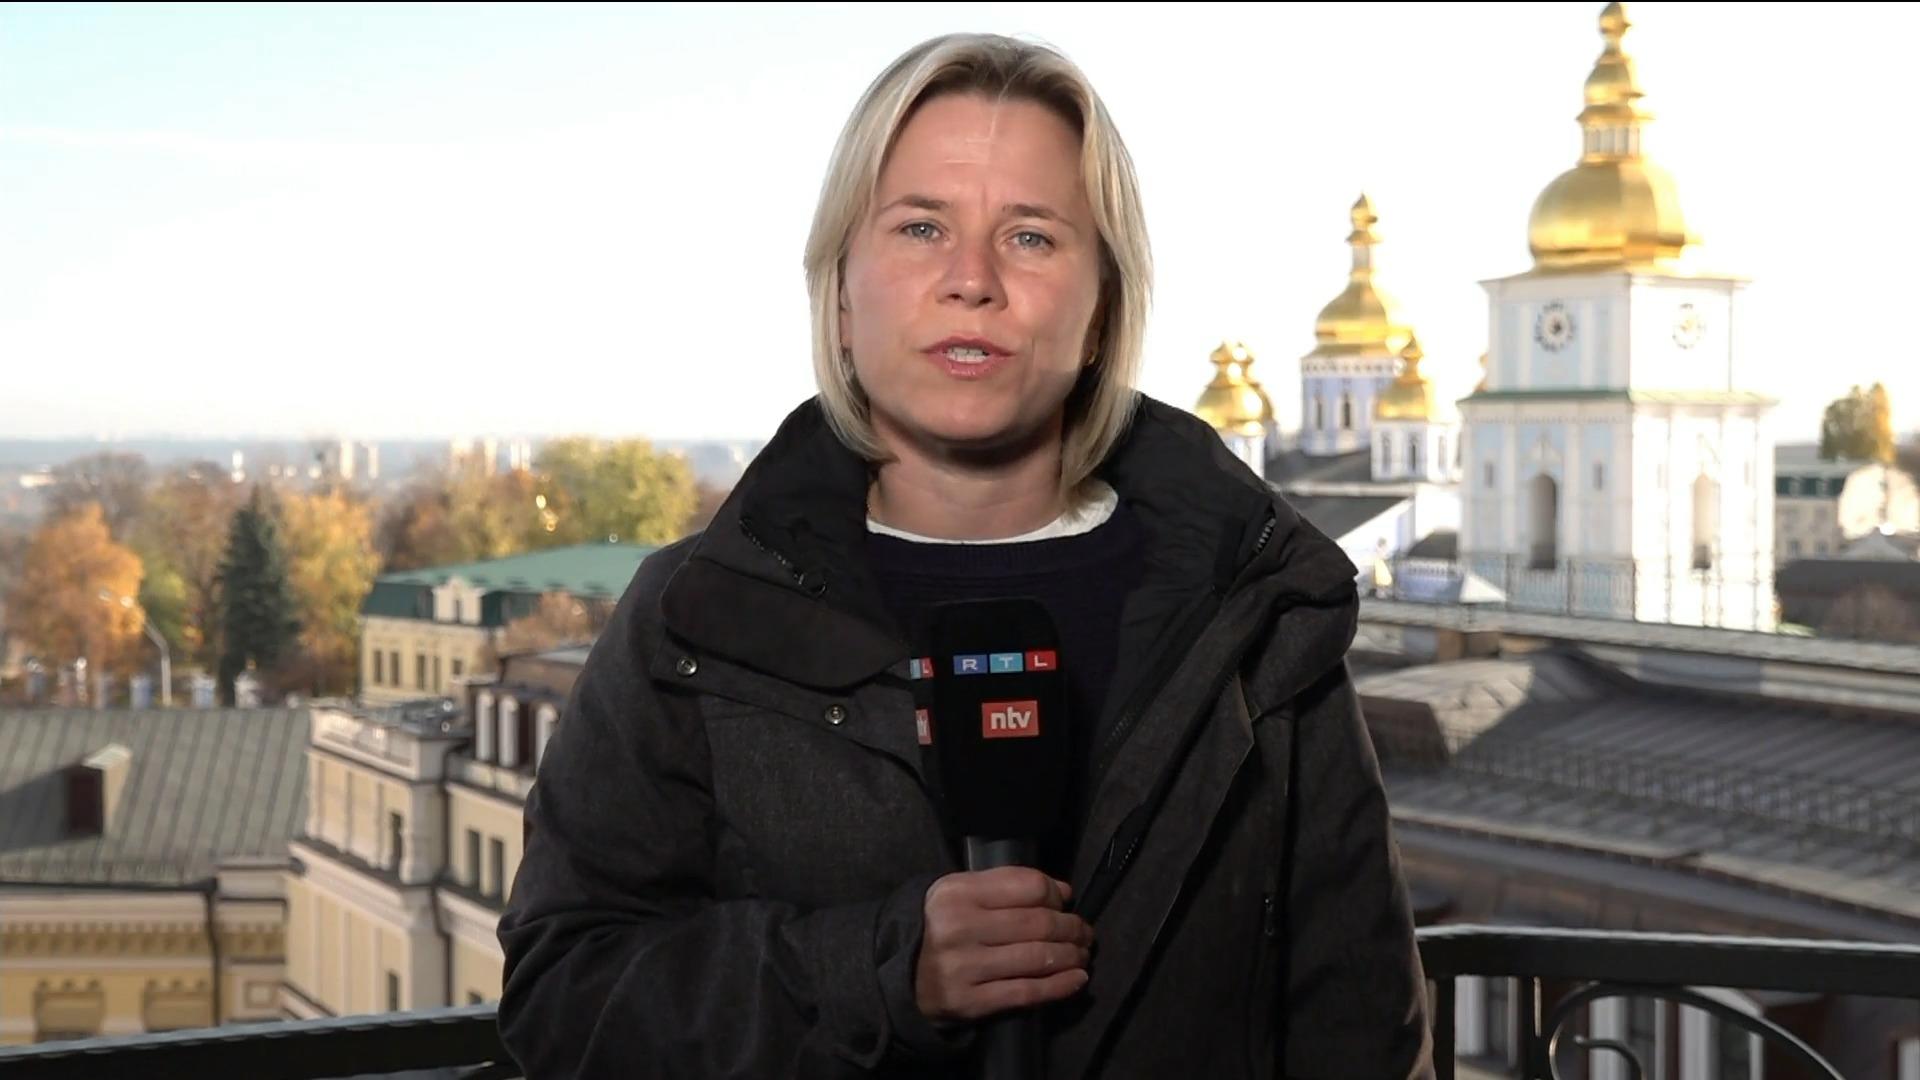 "Die Menschen hier haben sich auf kalte Nächte eingestellt" Alexandra Callenius in Kiew